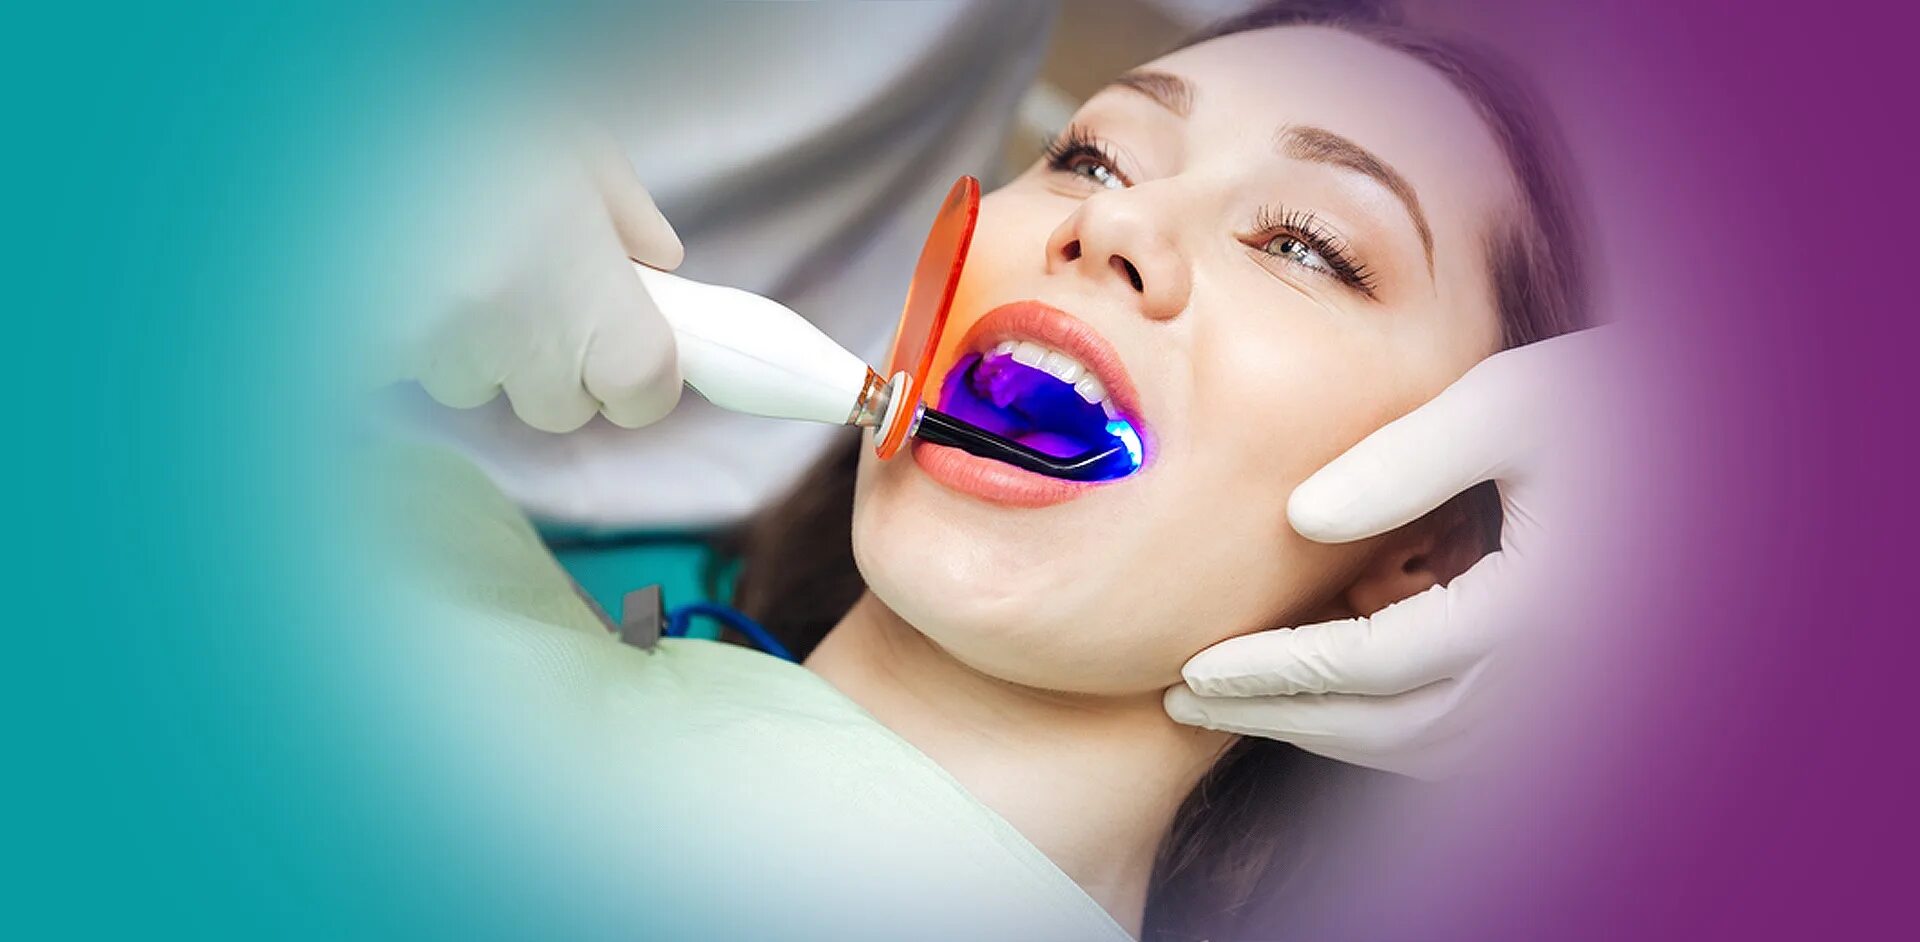 Профессиональная чистка зубов у стоматолога. Профессиональная гигиена полости рта. Отбеливание зубов. Профессиональное отбеливание зубов. Лазерное отбеливание зубов.